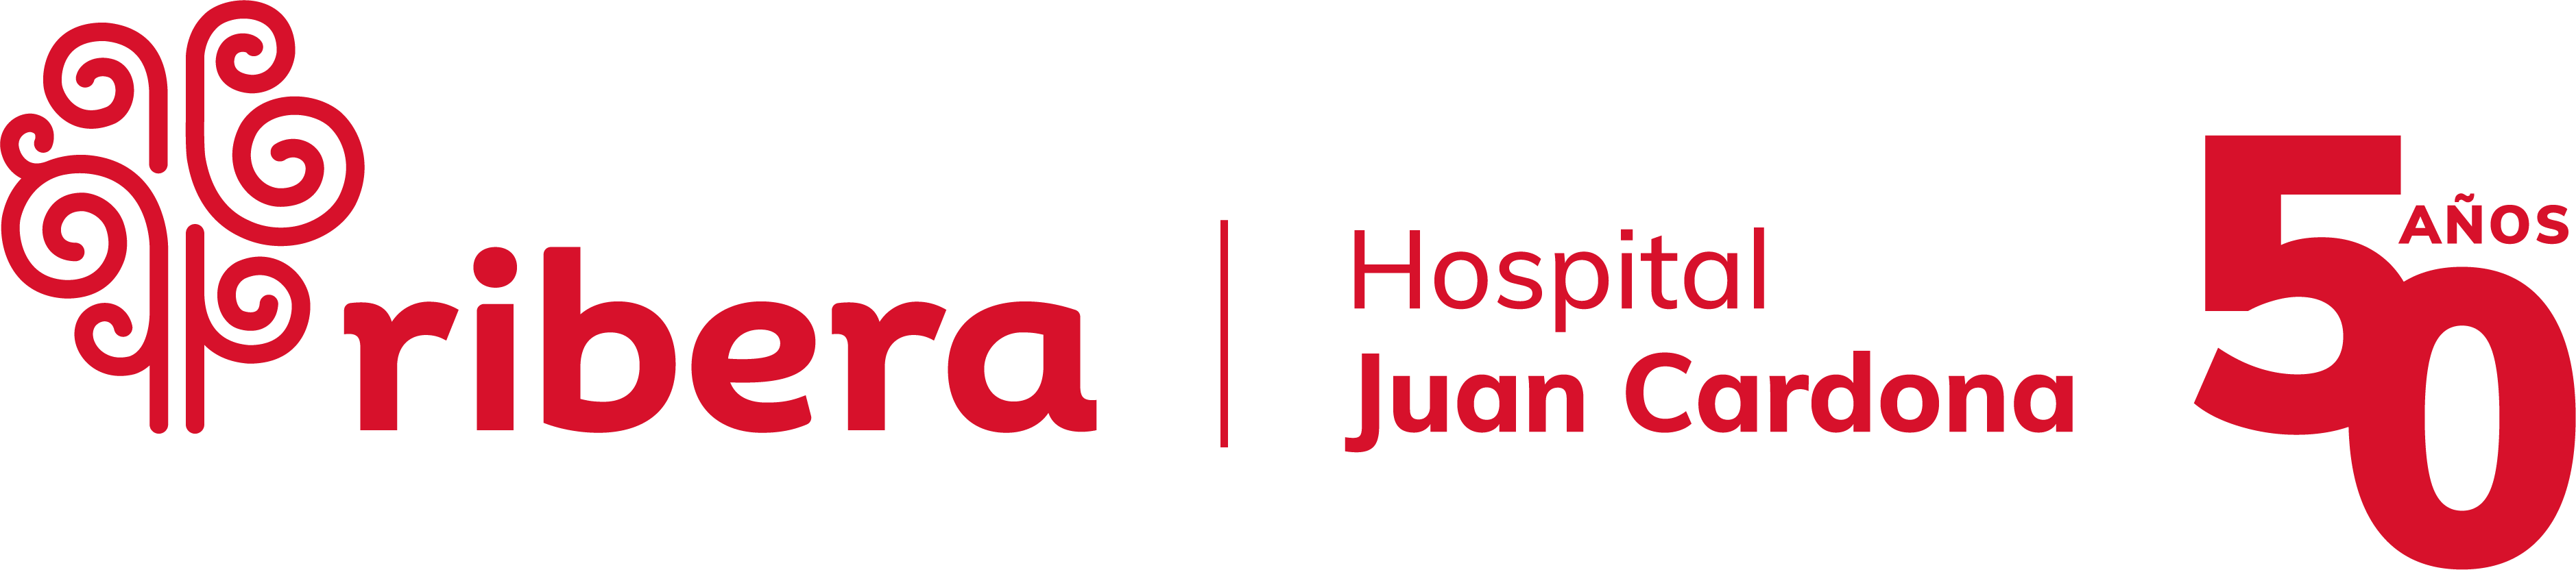 Hospital Ribera Juan Cardona